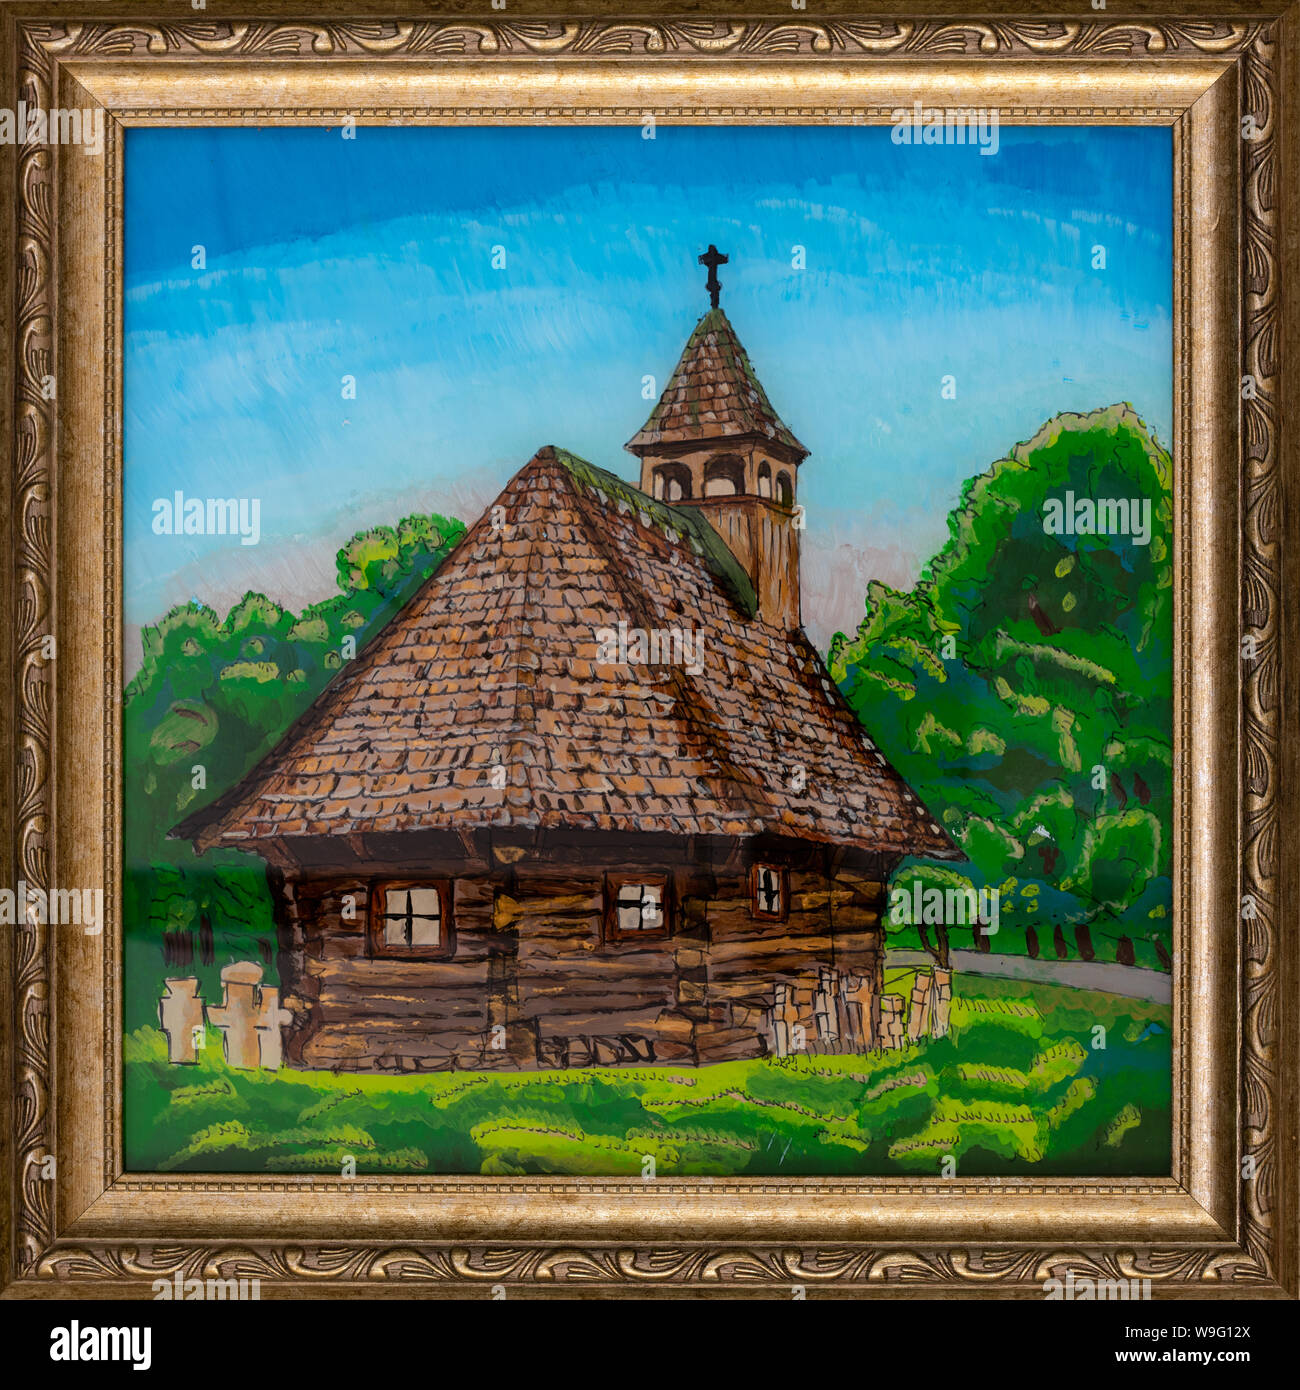 Un cadre peinture sur verre inversé représentant une église en bois typique de la région de Maramures, Roumanie. Banque D'Images